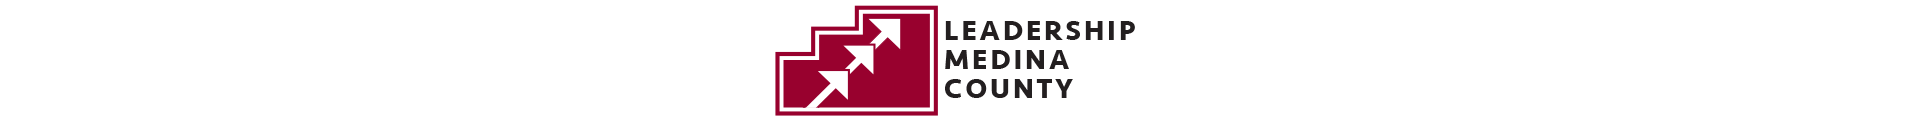 Leadership Medina County